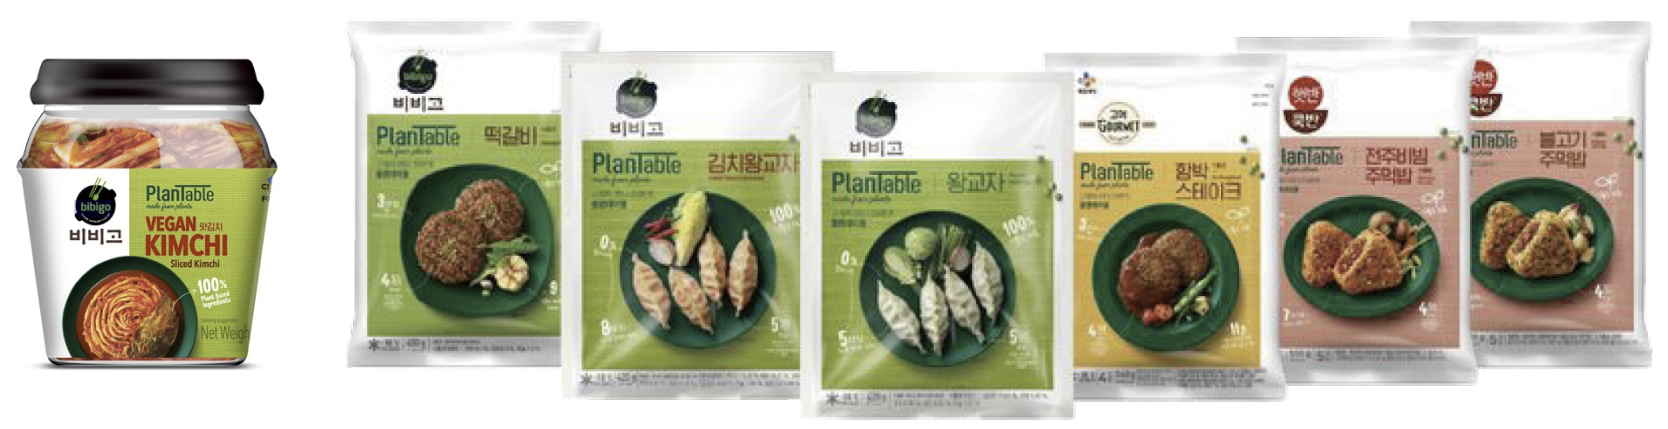 扩大植物性食品品牌“PlanTable”的产品组合